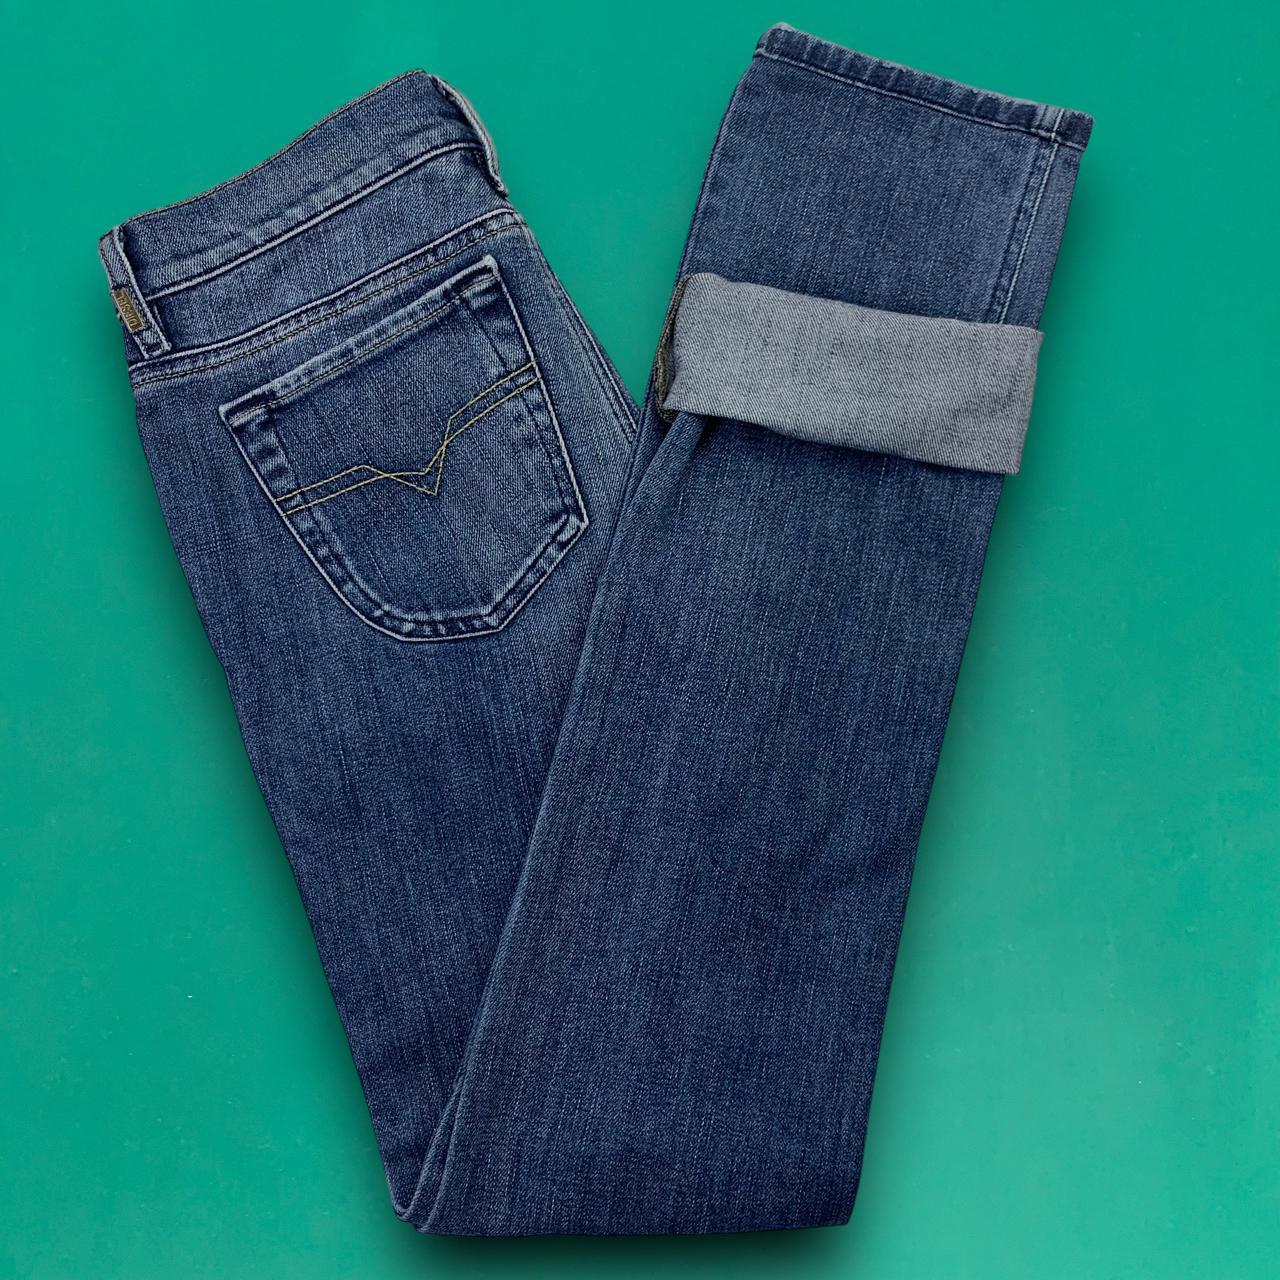 Diesel Jeans Vintage Italian Designer LIV Slim Low... - Depop